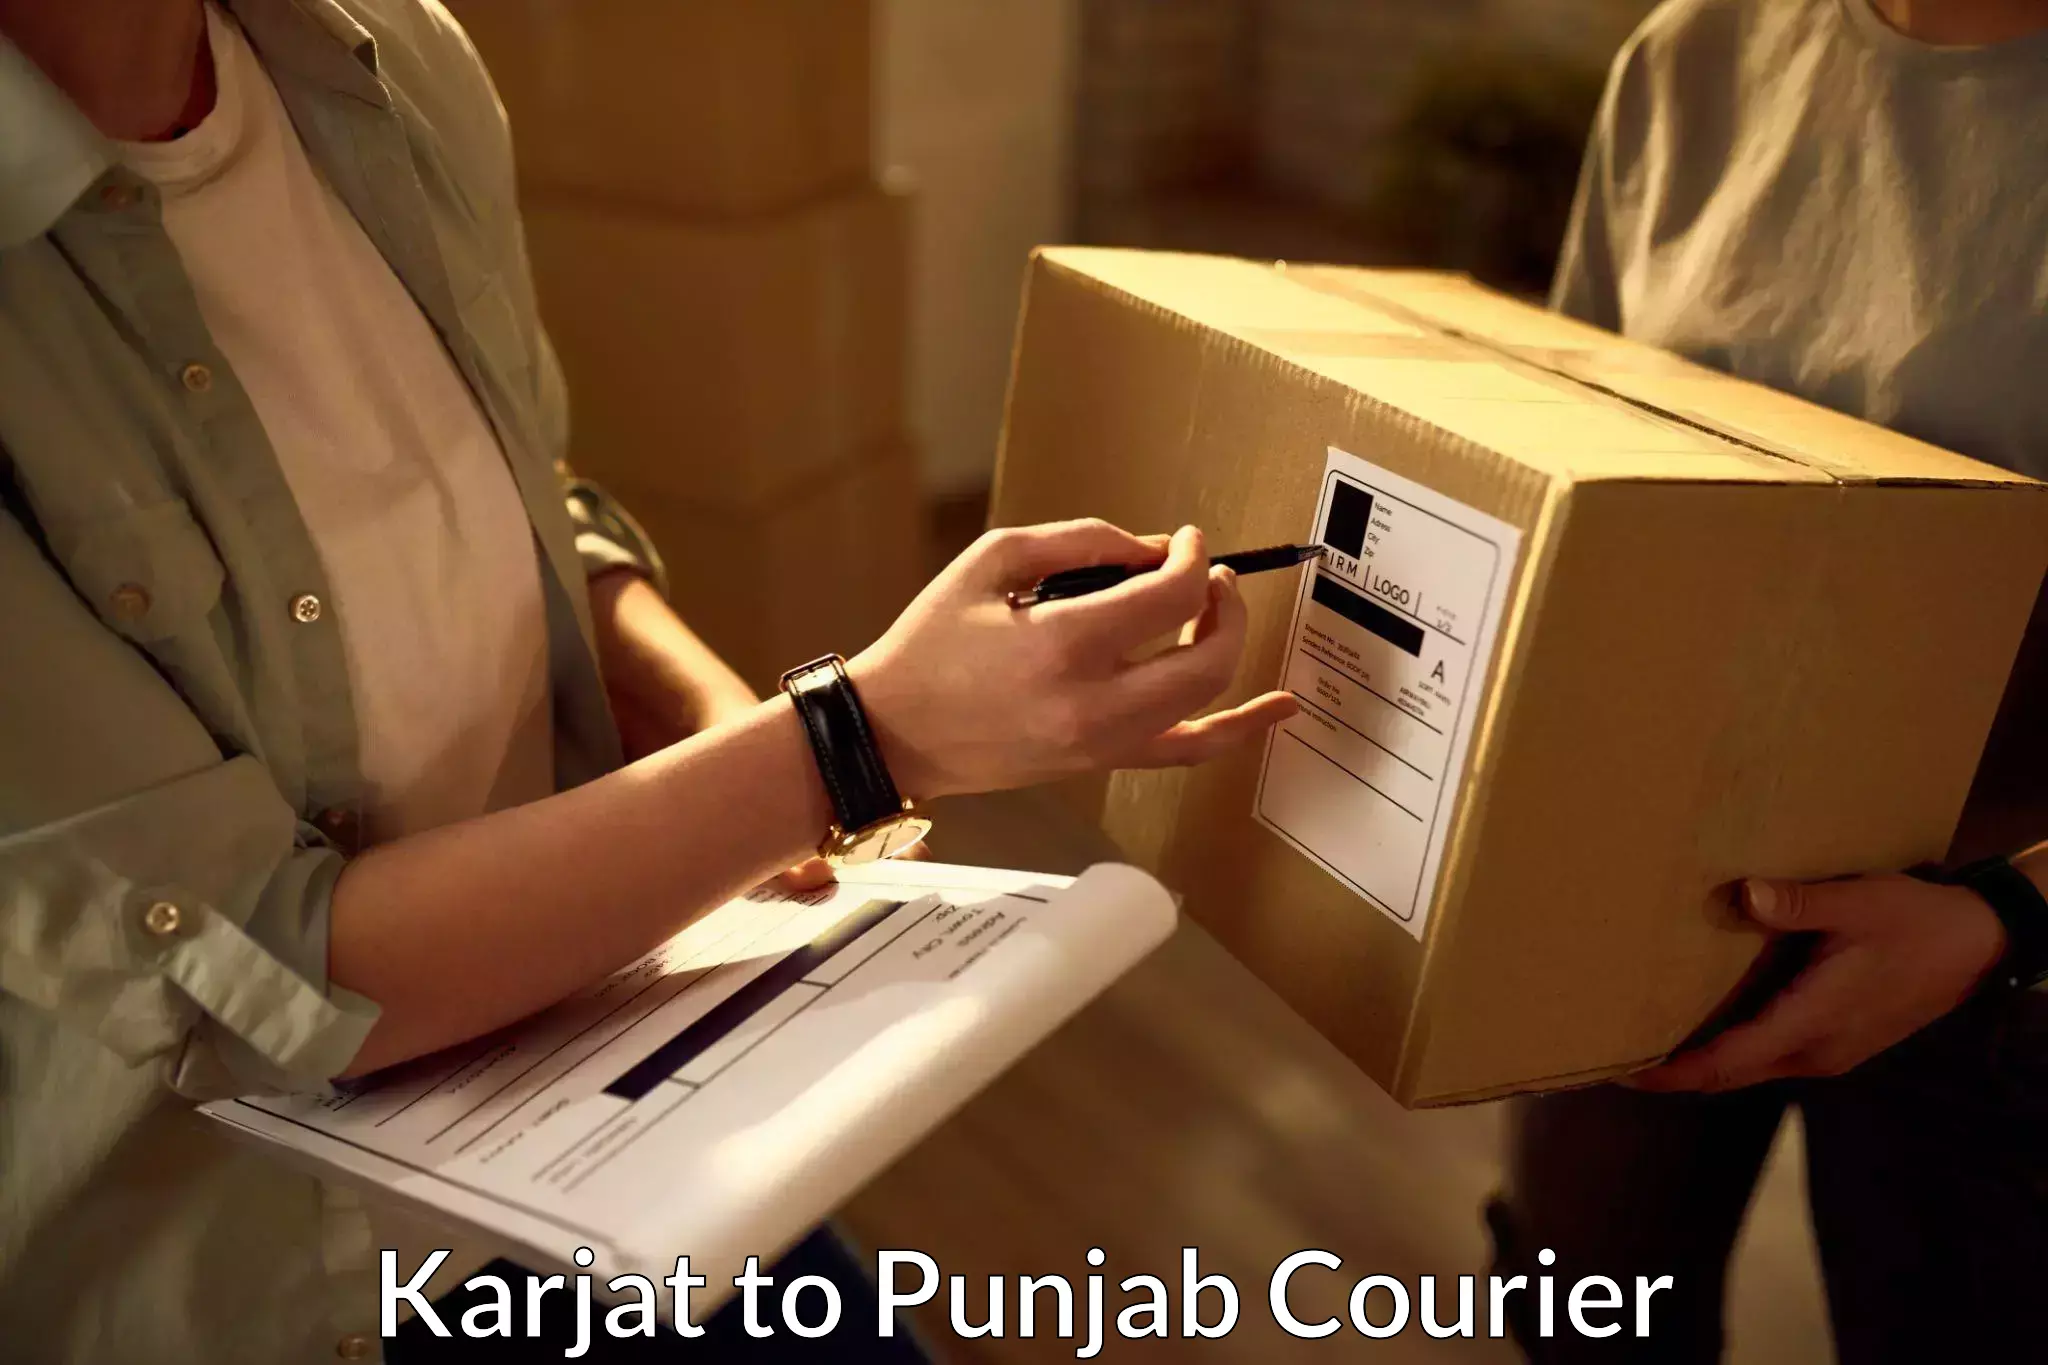 Domestic courier Karjat to Jalandhar